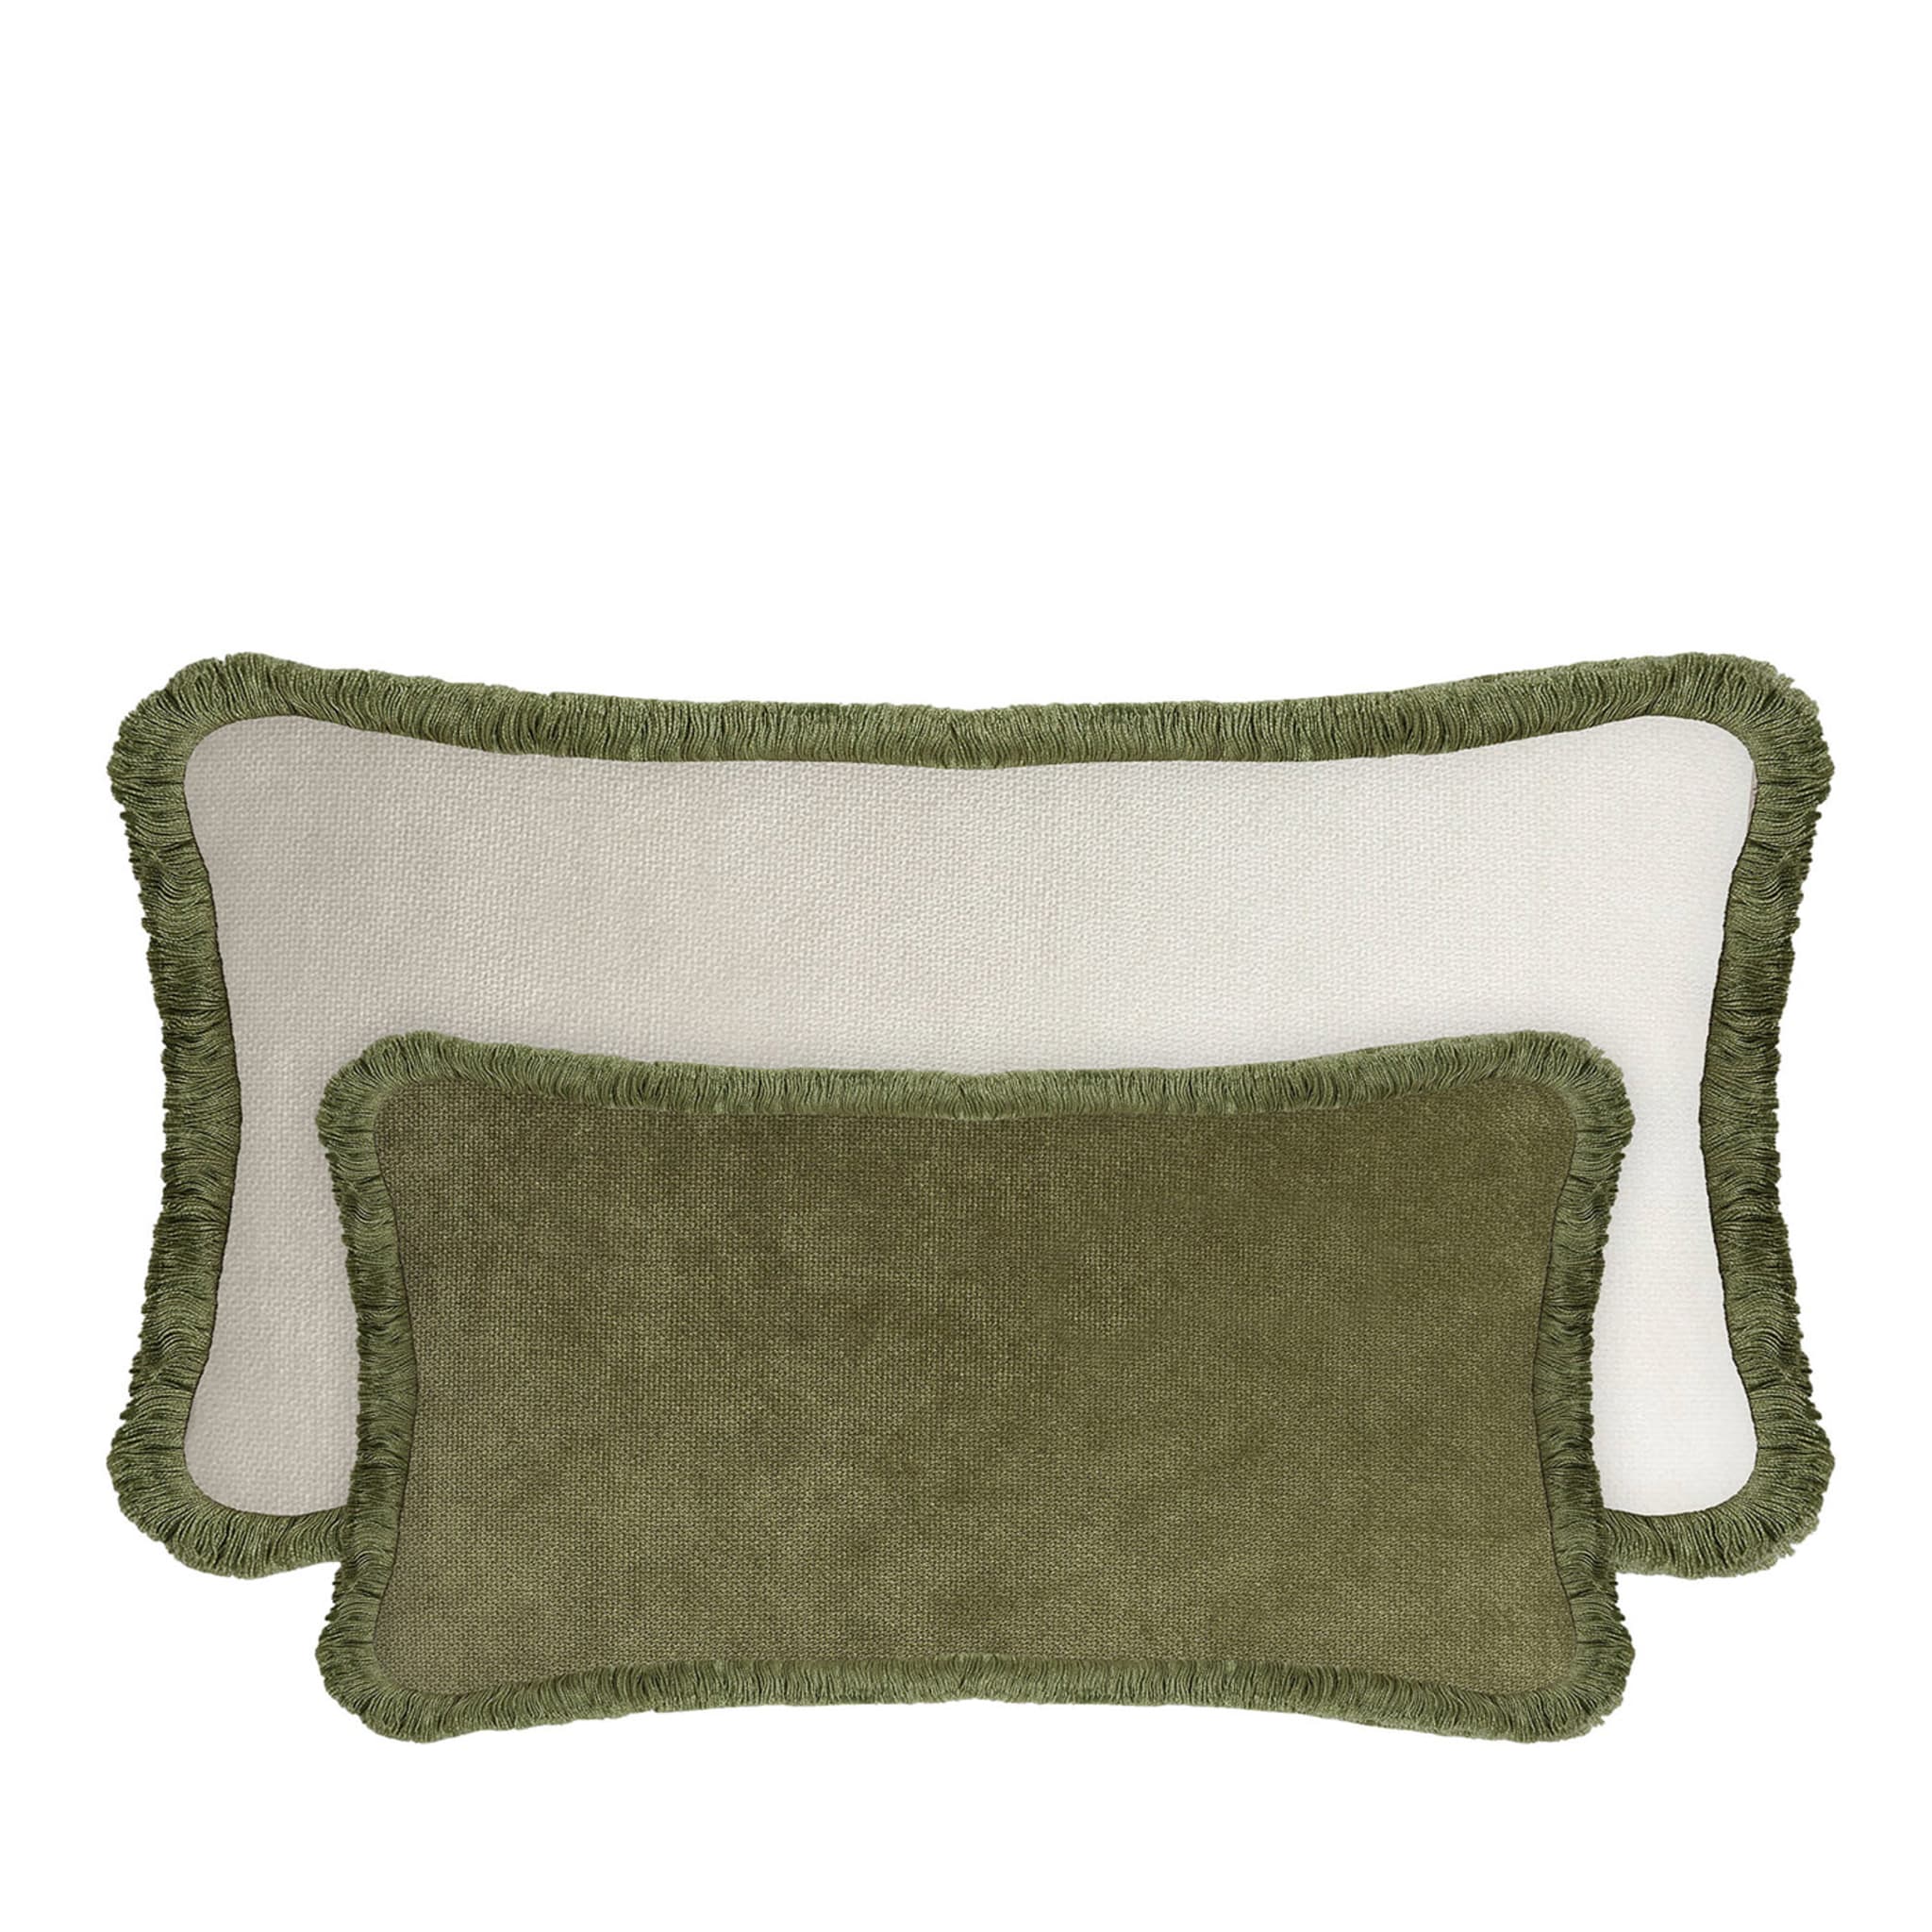 Cuscino Happy in velluto verde e bianco a forma di coppia rettangolare - Vista principale